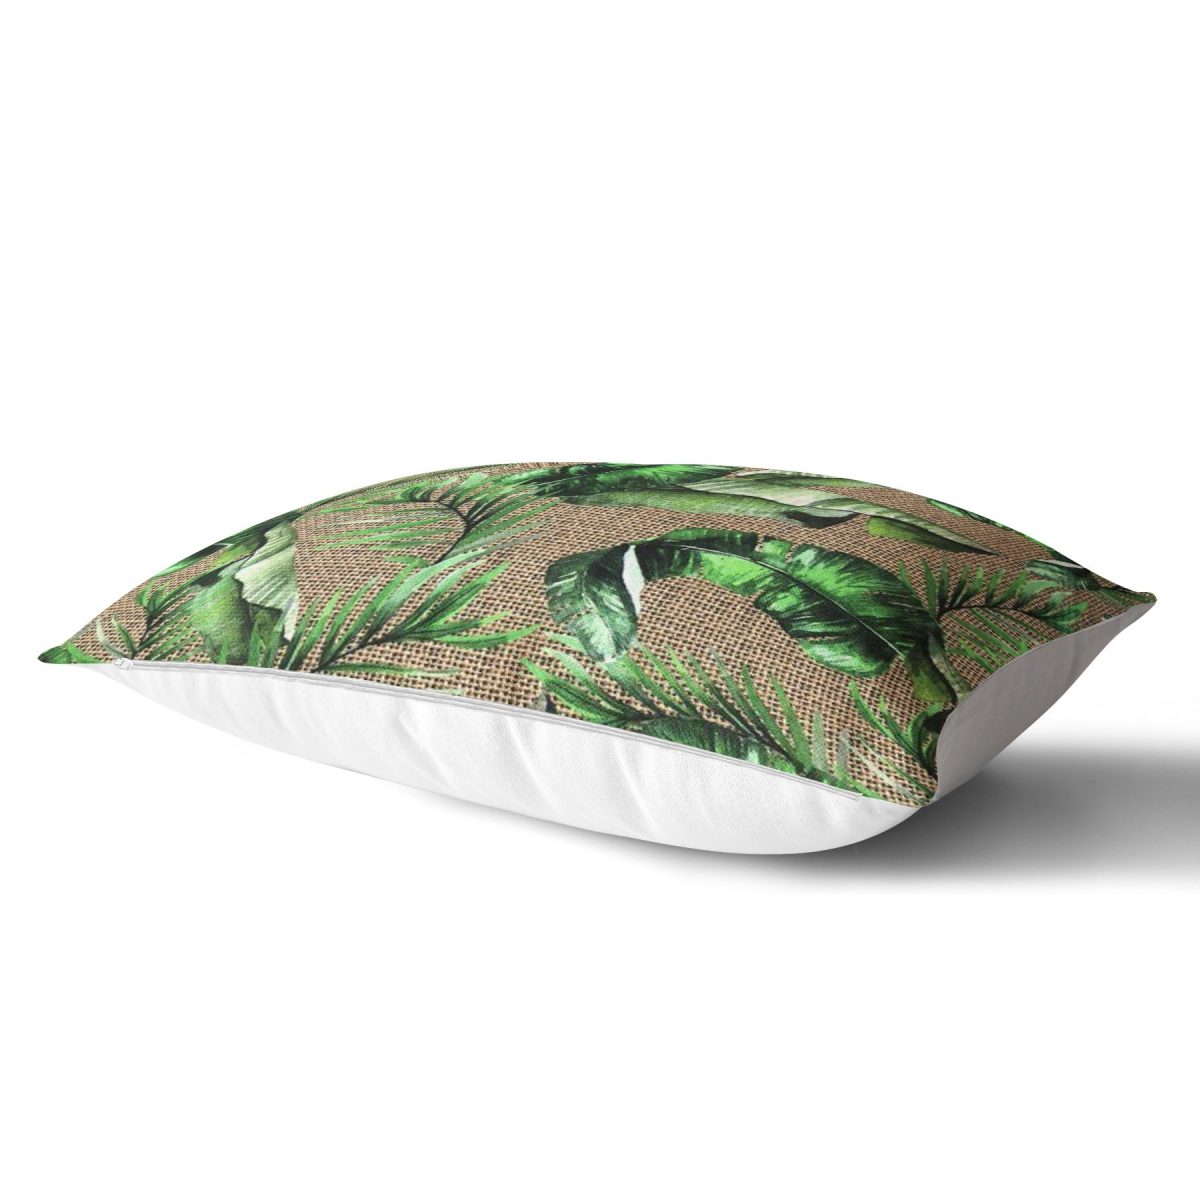 Çuval Zeminde Yeşil Yaprak Desenli Özel Tasarım Dikdörtgen Yastık Kırlent Kılıfı Realhomes